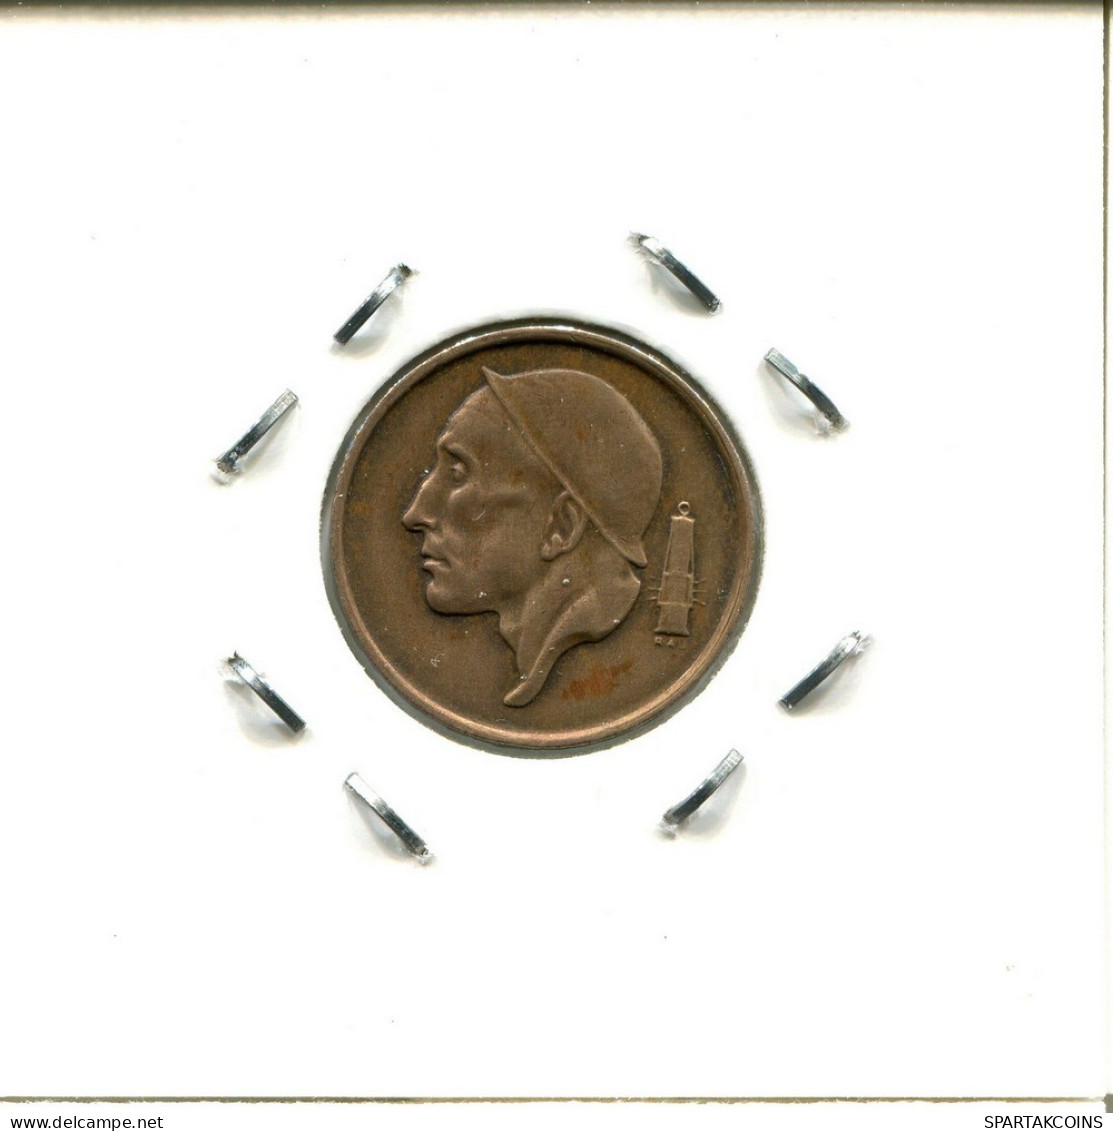 50 CENTIMES 1972 FRENCH Text BÉLGICA BELGIUM Moneda #BA365.E.A - 50 Cent